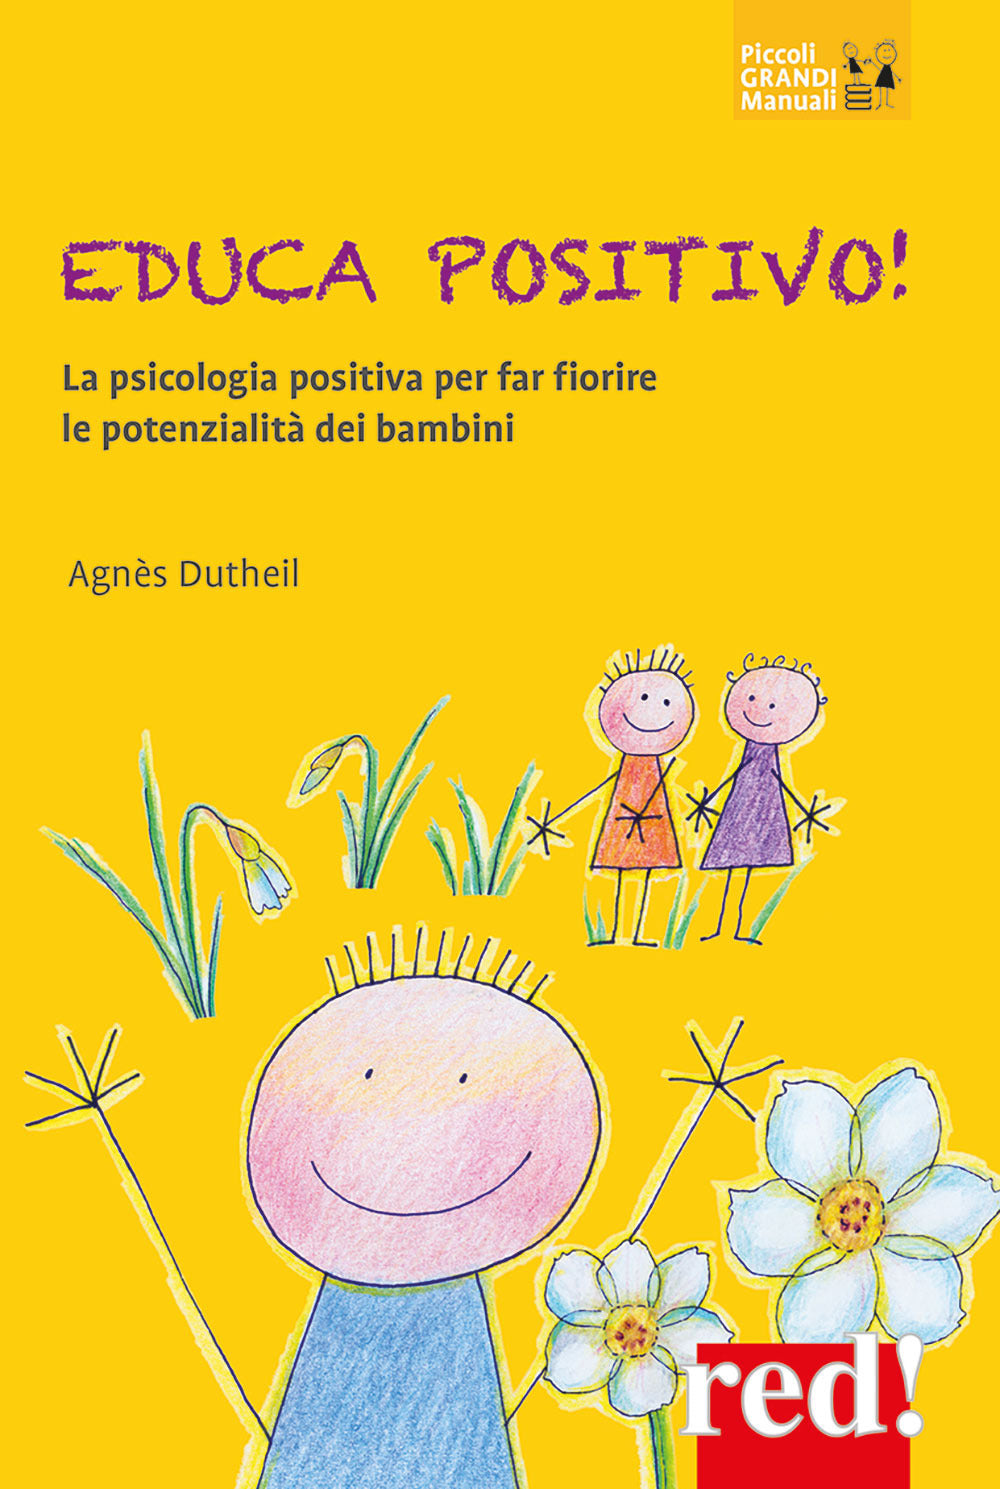 Educa positivo! La psicologia positiva per far fiorire le potenzialità dei bambini.